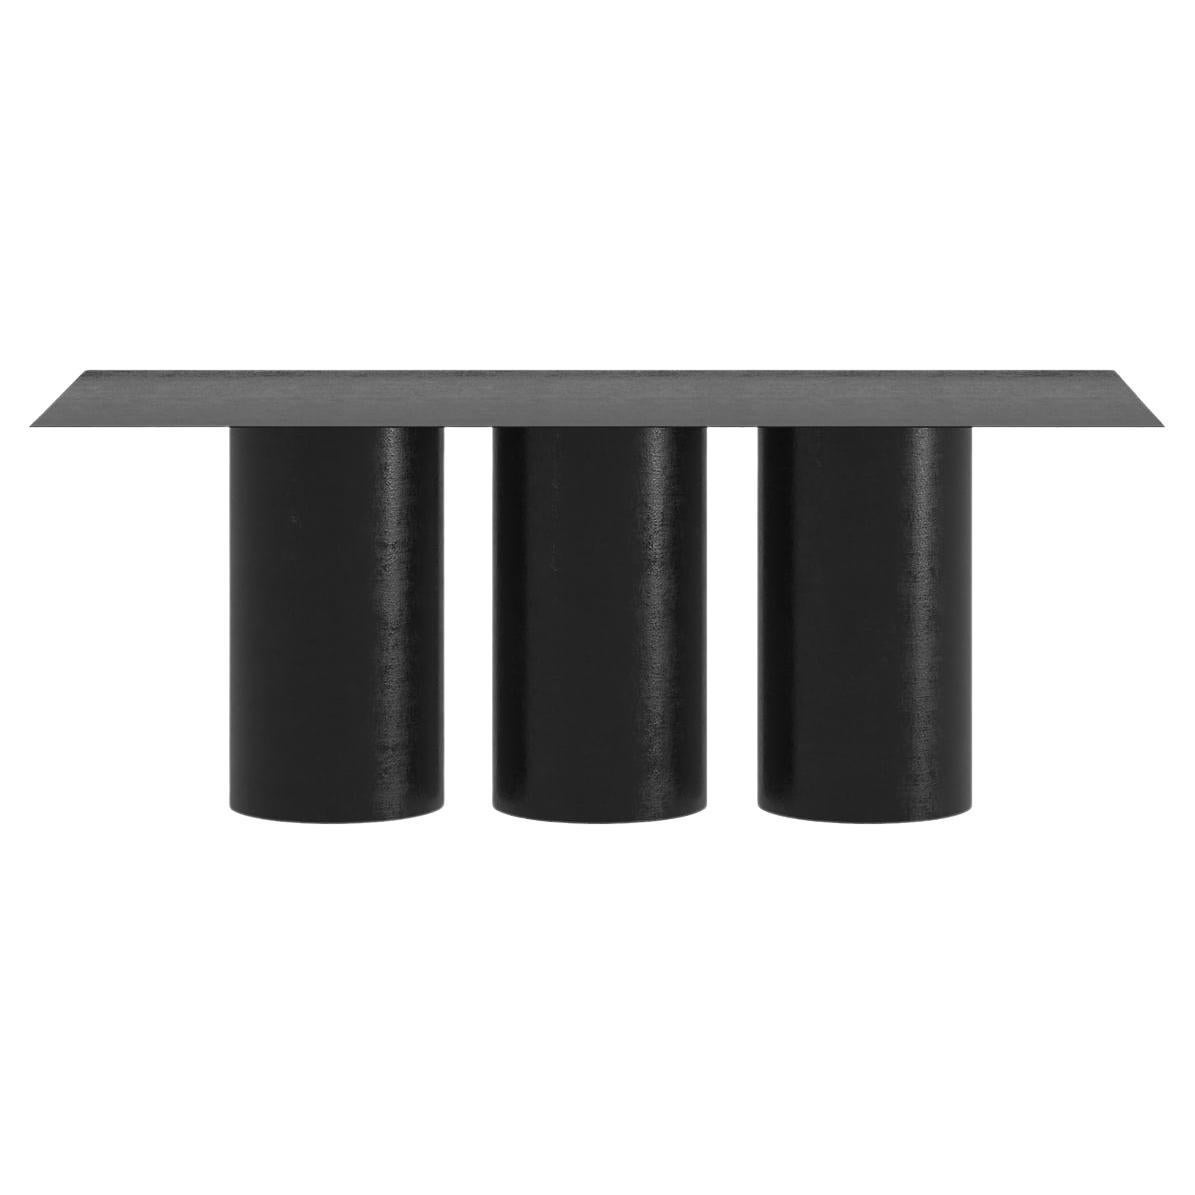 Der Tripod Dining Table ist ein monolithisches Stück, das als Esstisch für den Innen- und Außenbereich konzipiert wurde. 
Von Hand aus galvanisiertem Aluminium gefertigt und mit einer matten elektrostatischen Beschichtung versehen, kann seine Größe